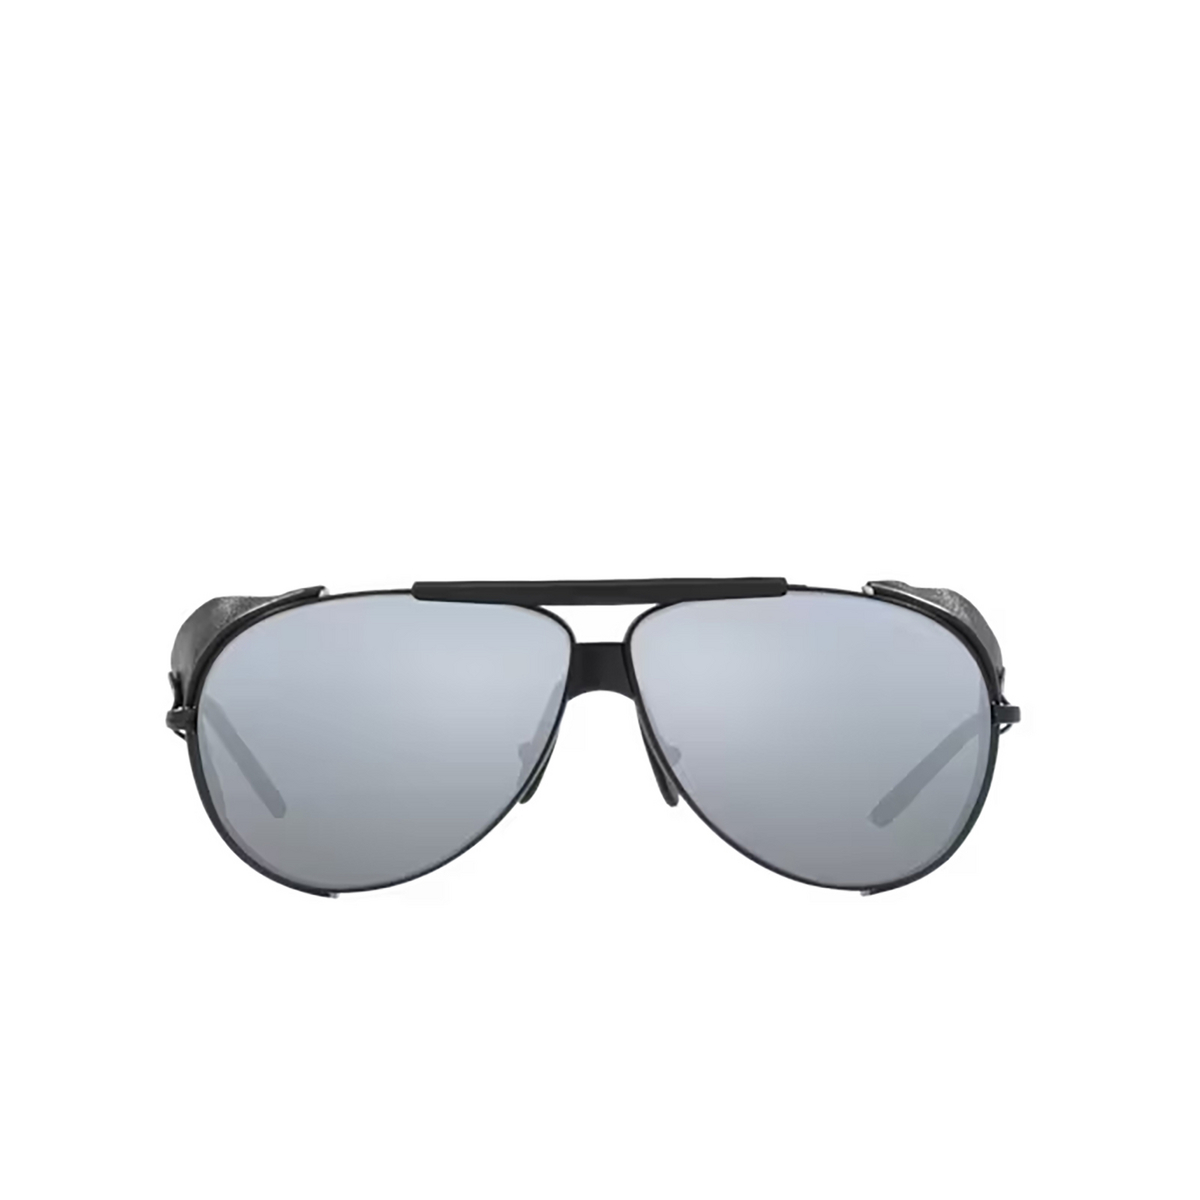 Giorgio Armani AR6139Q Sunglasses 300130 Matte Black - front view